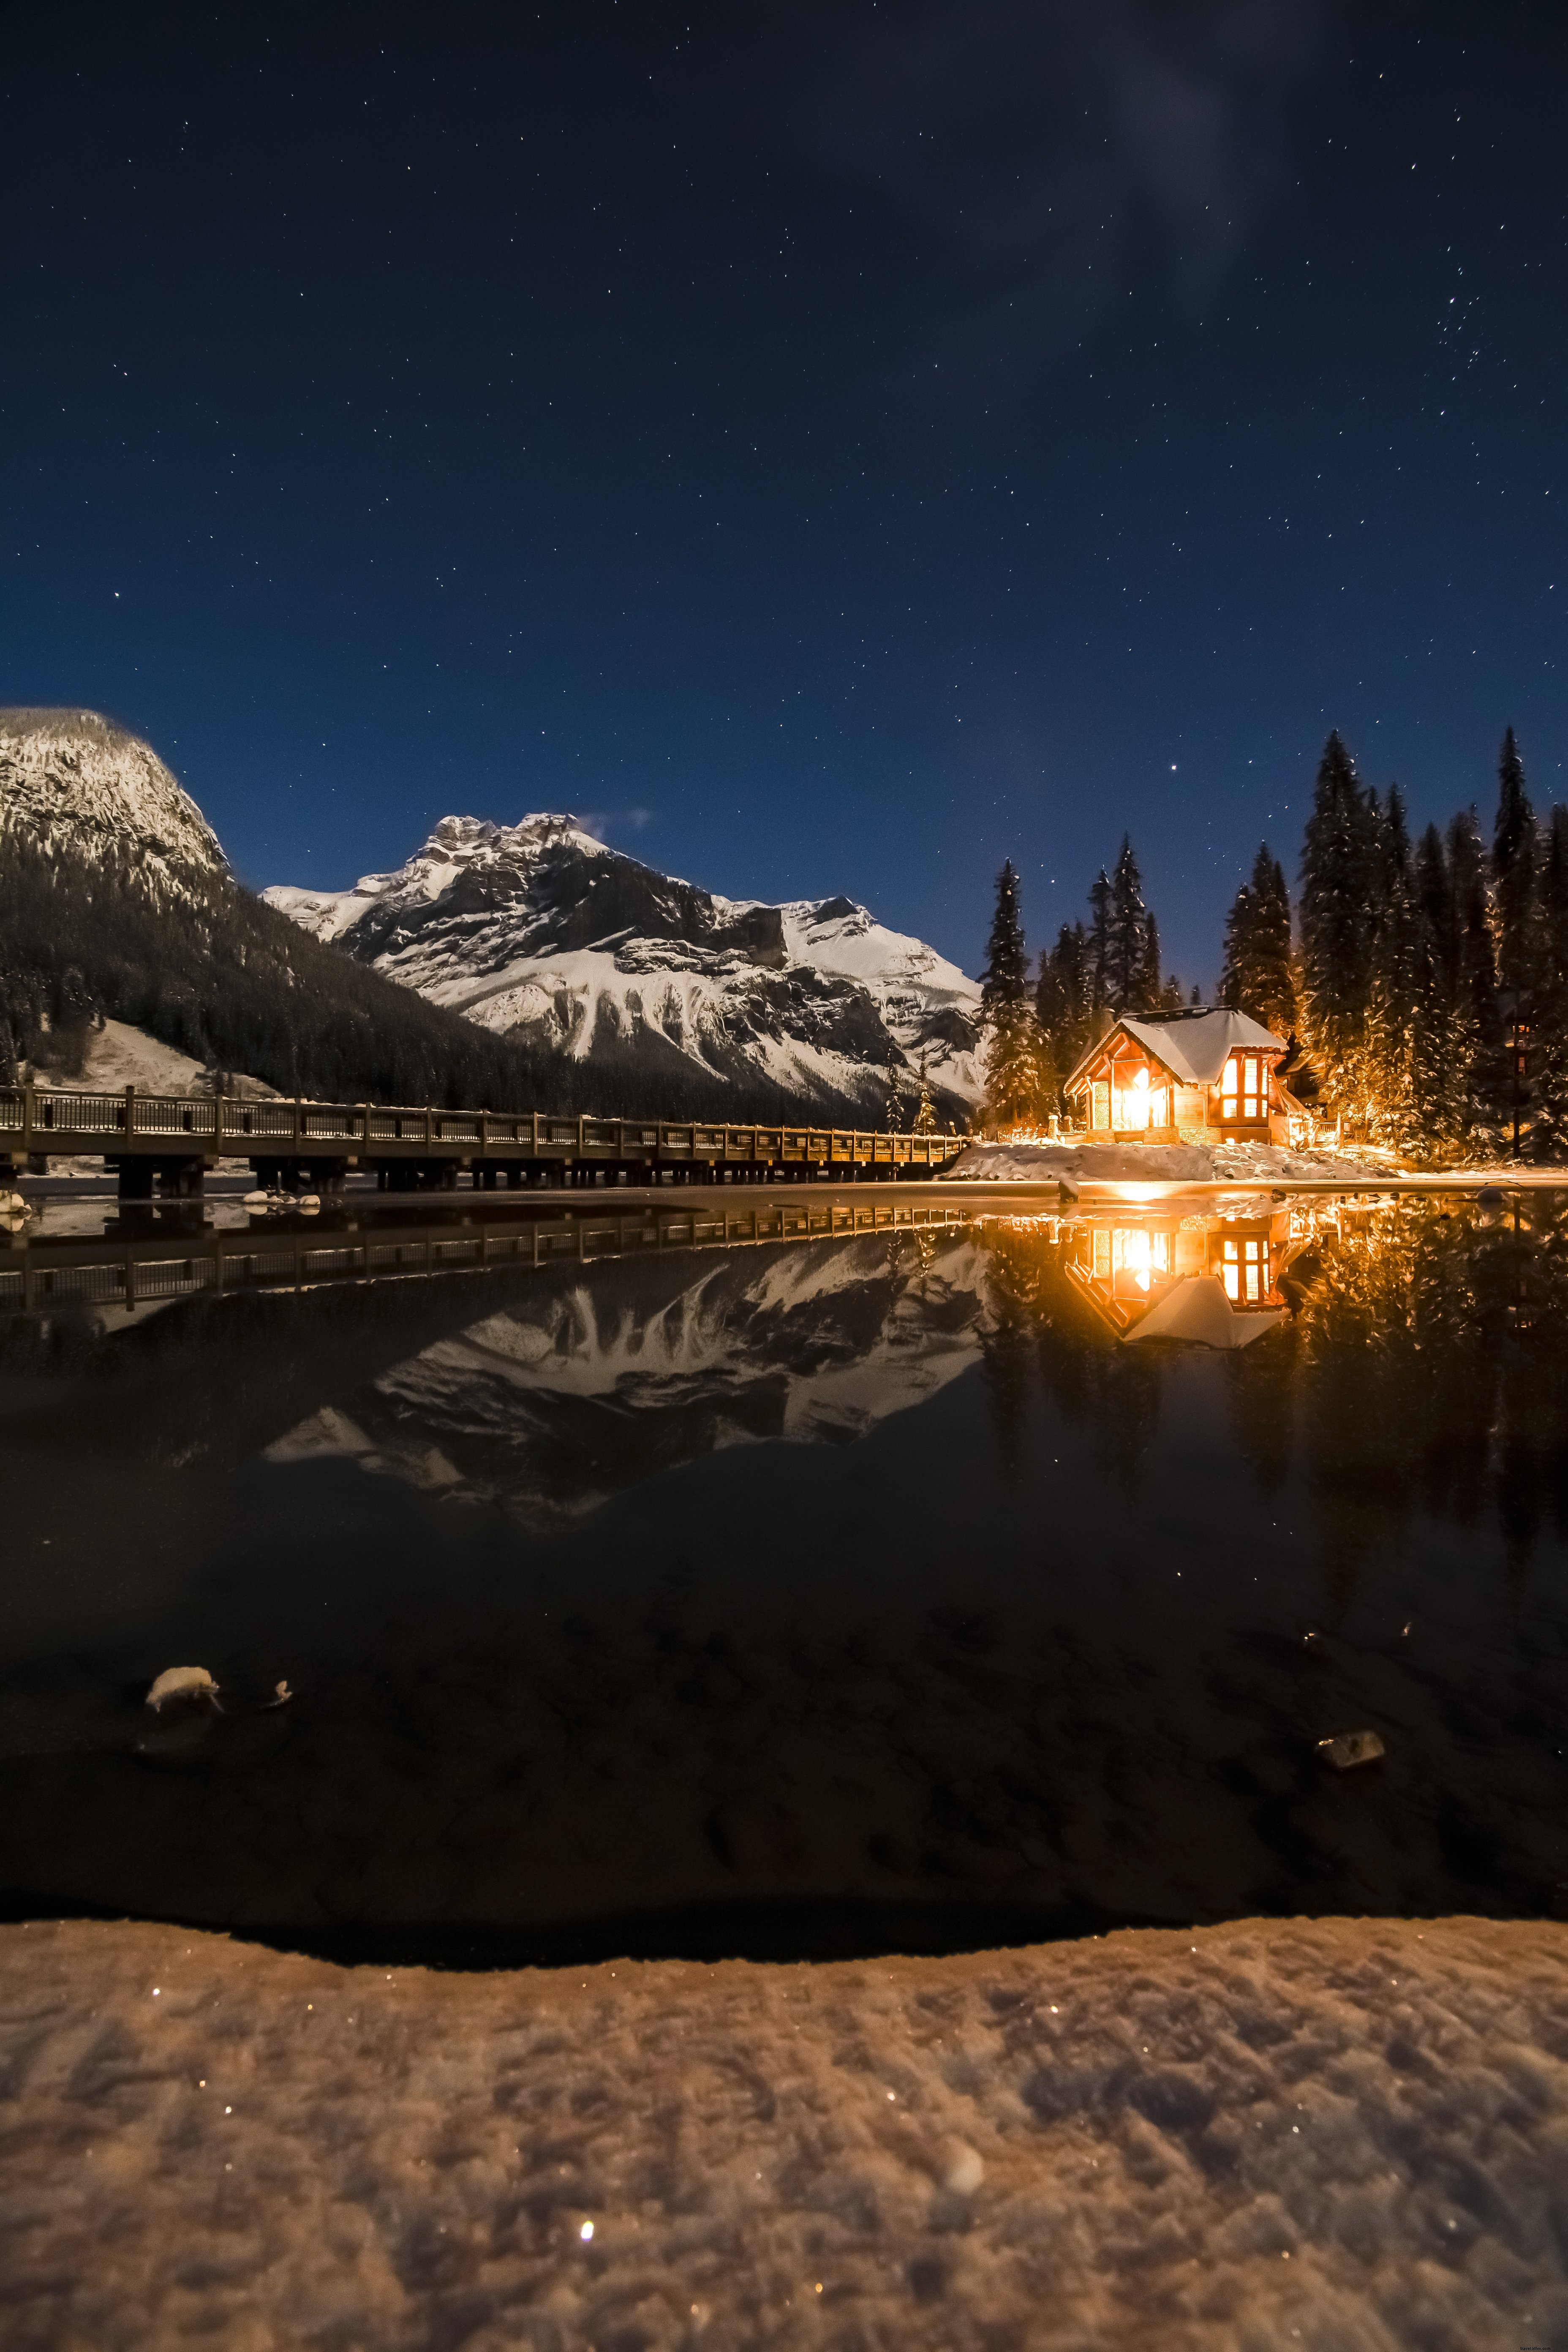 La casa illuminata dal fuoco risplende vicino a un lago gelido contro un cielo stellato Foto